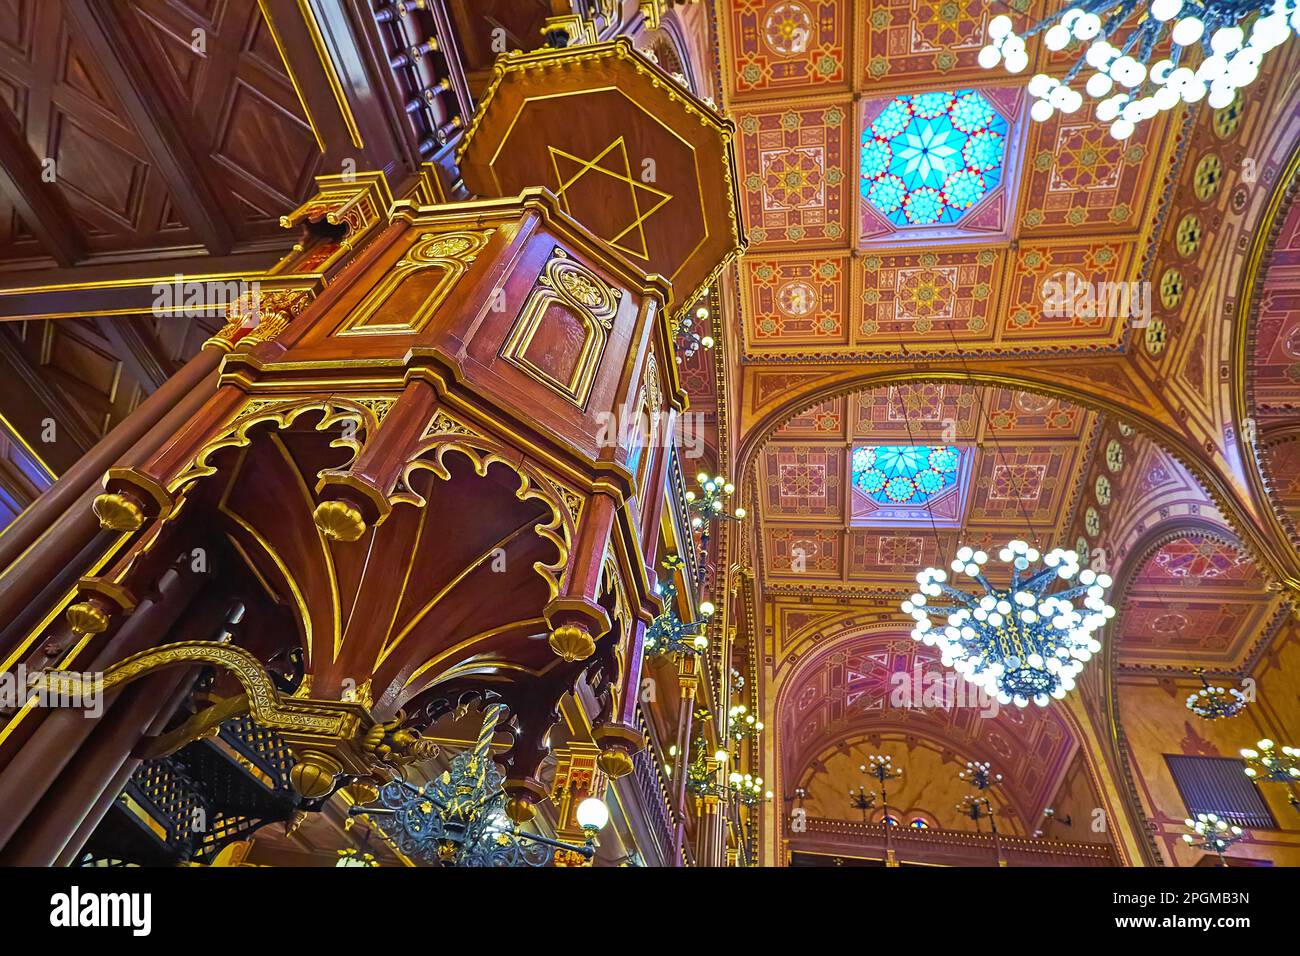 BUDAPEST, UNGARN - 22. FEBRUAR 2022: Gebetshalle der Dohany Street Synagoge mit geschnitzter Holzkanzel und reich verzierter Decke, am 22. Februar in Budapest Stockfoto